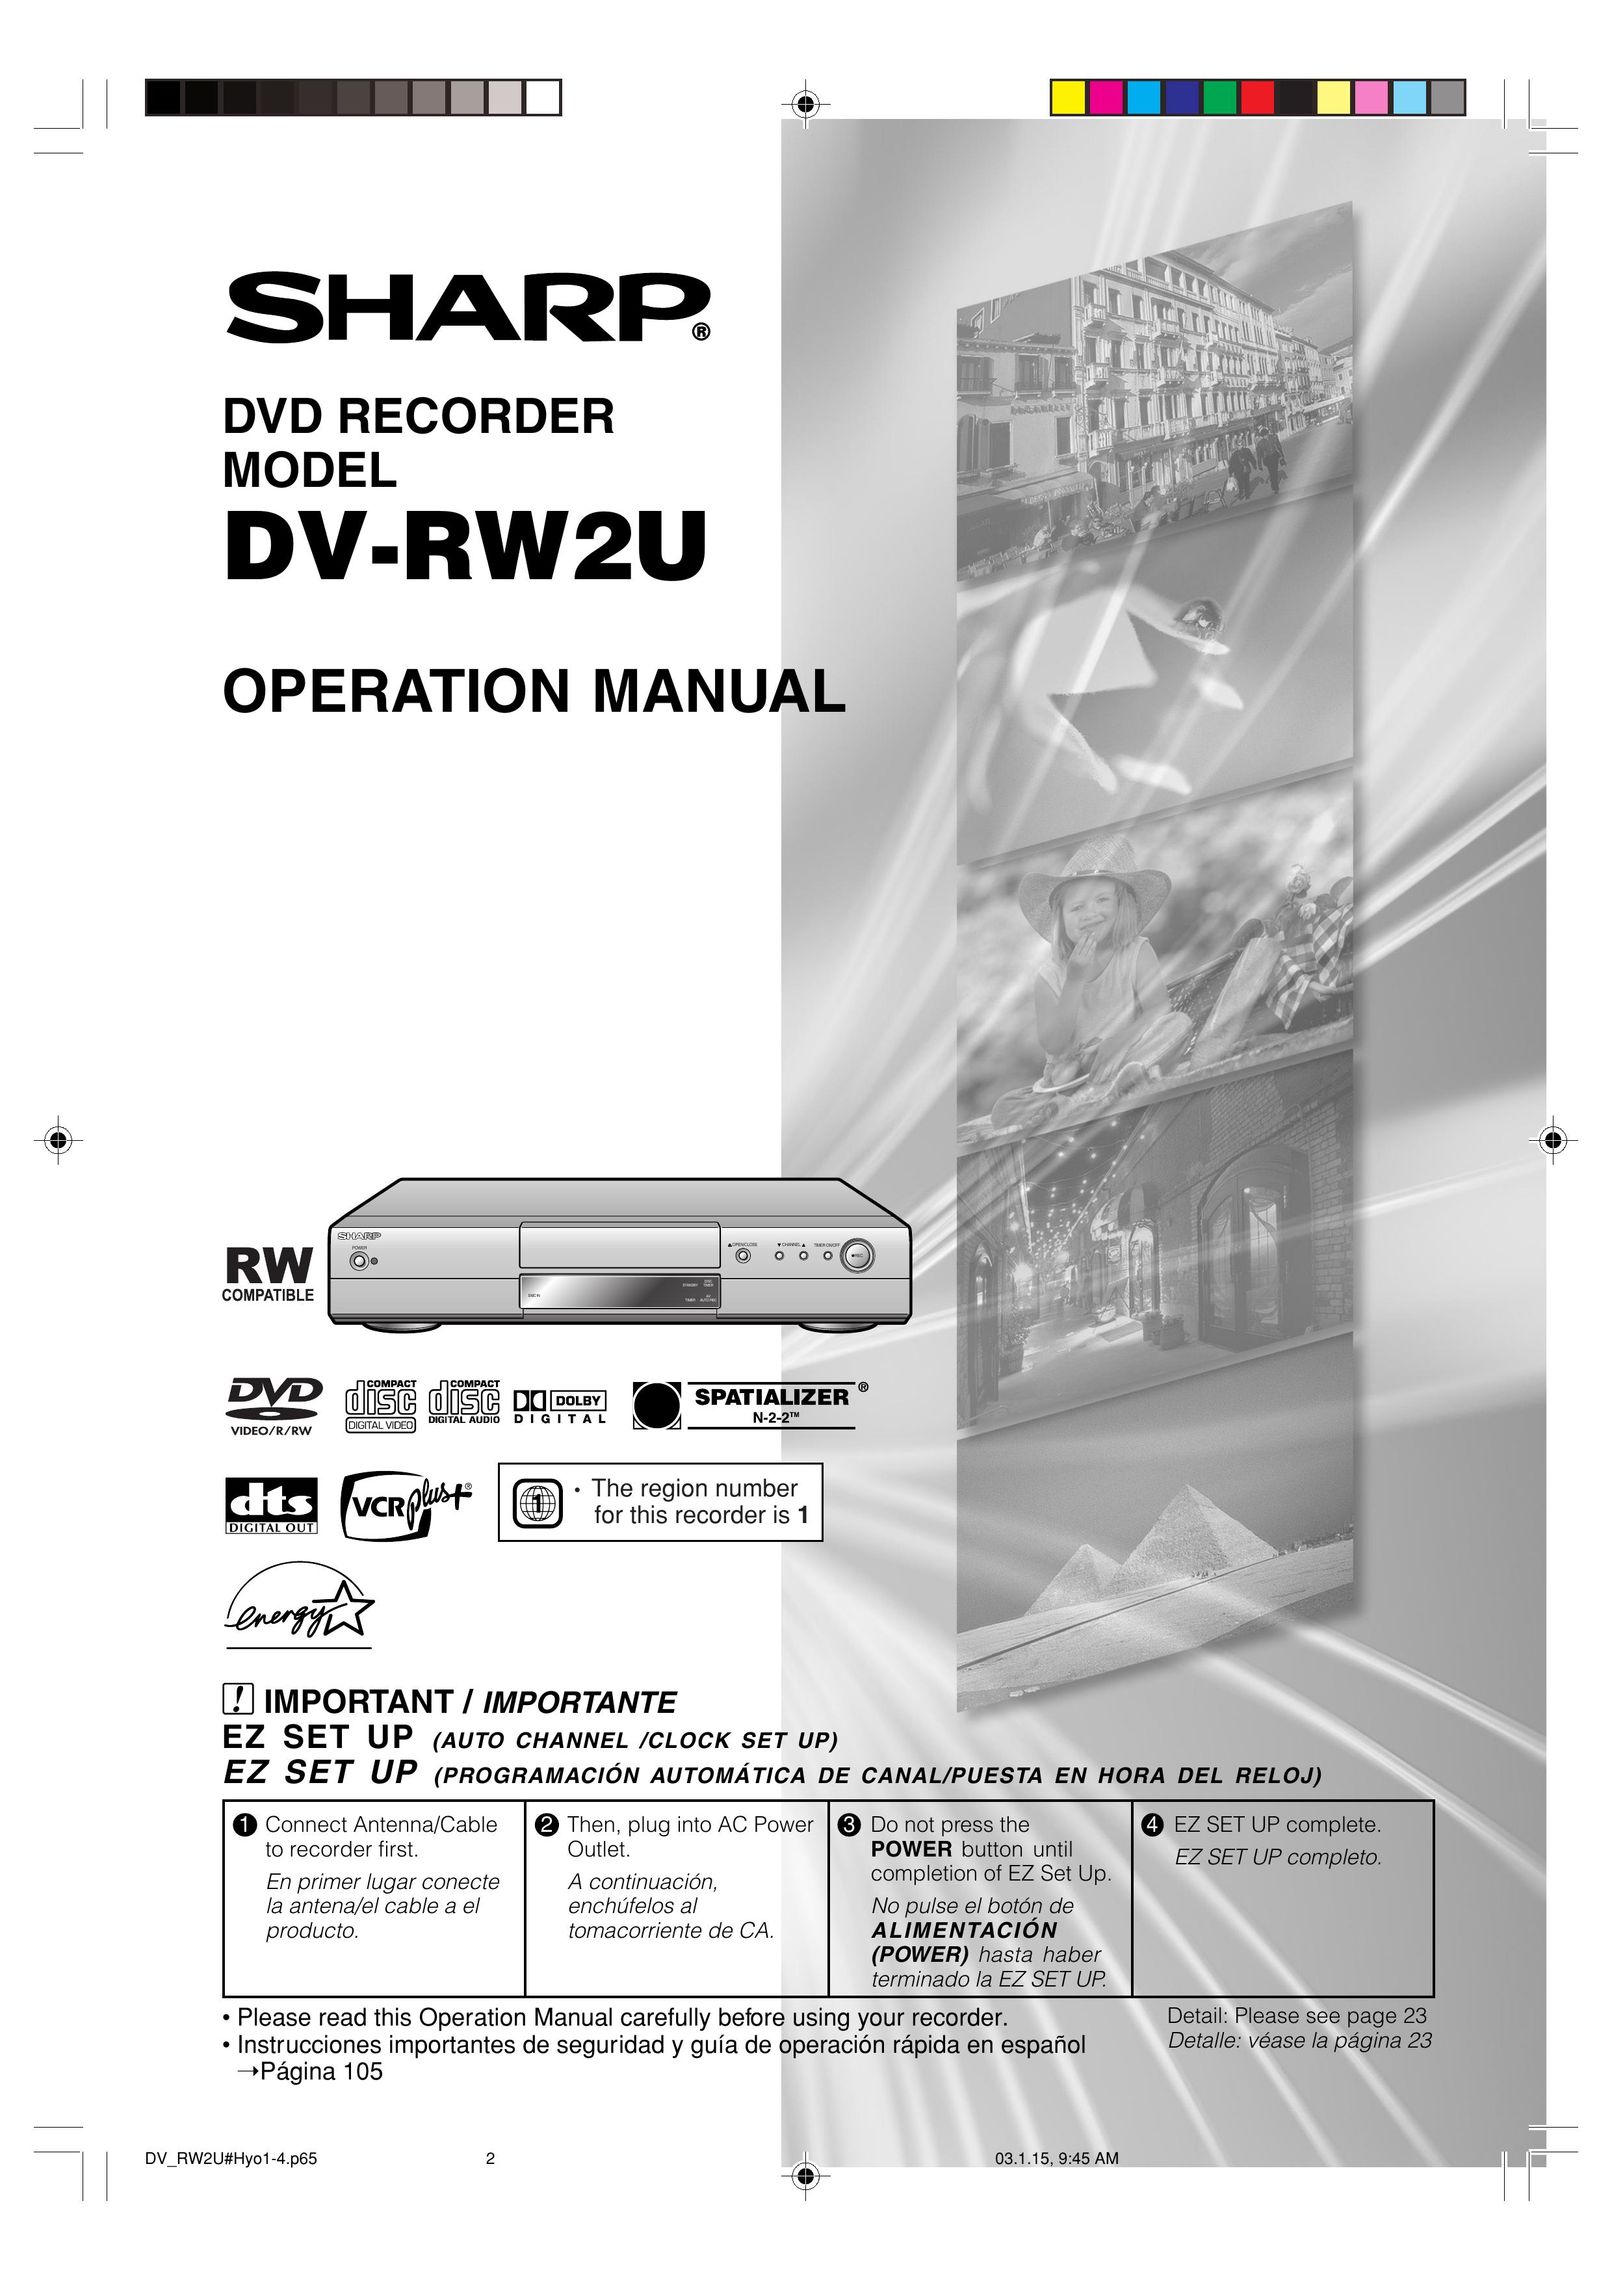 Sharp DV-RW2U DVD Recorder User Manual